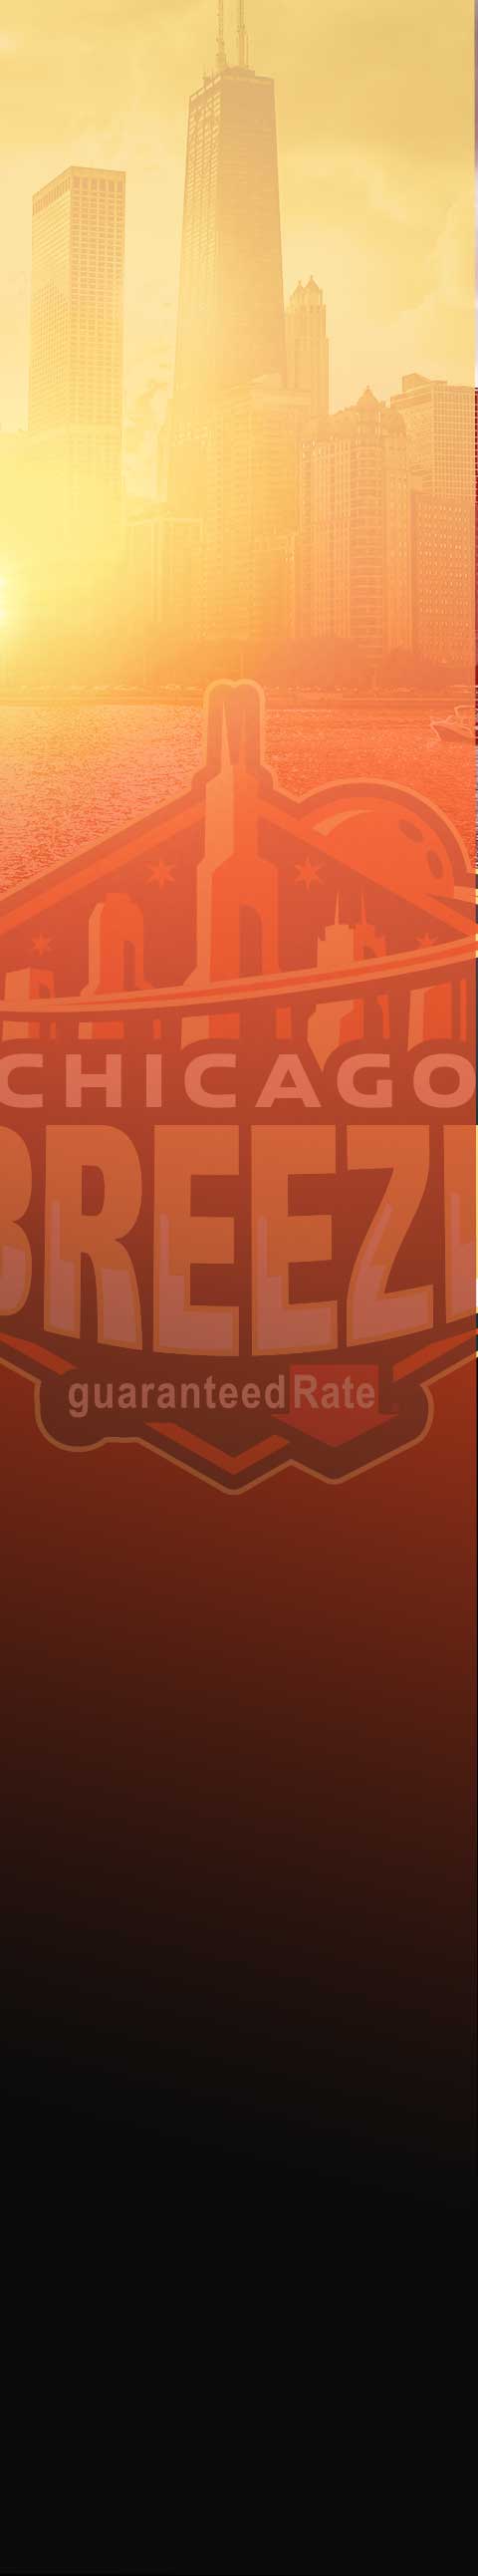 PBA League - Chicago Breeze